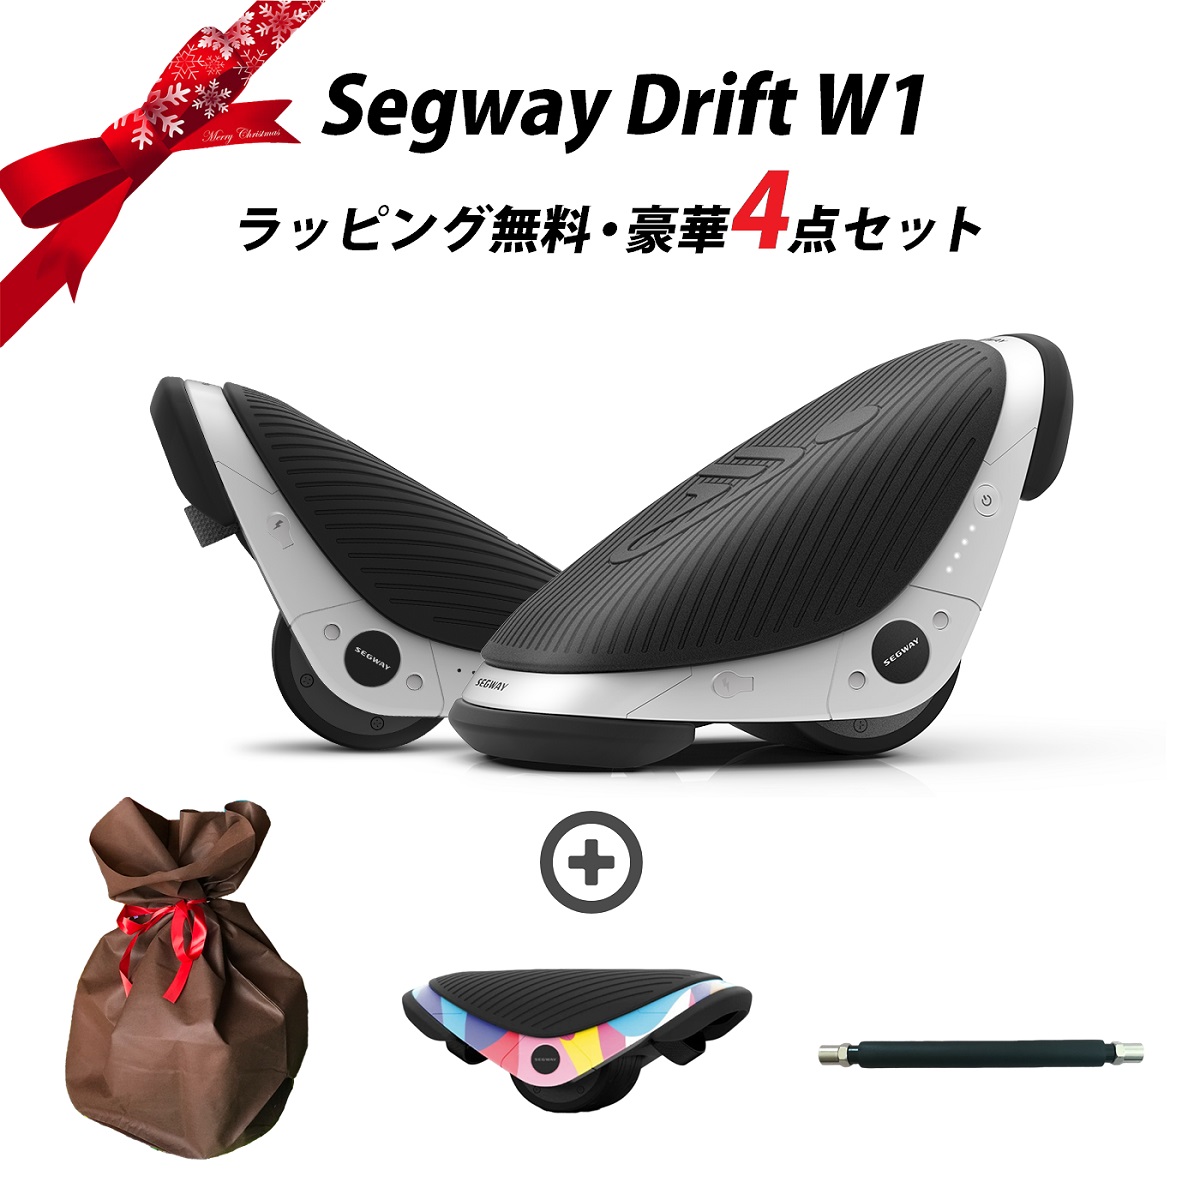 贅沢 セグウェイ 本体セット W1 Drift Segway ドリフト - その他 - labelians.fr